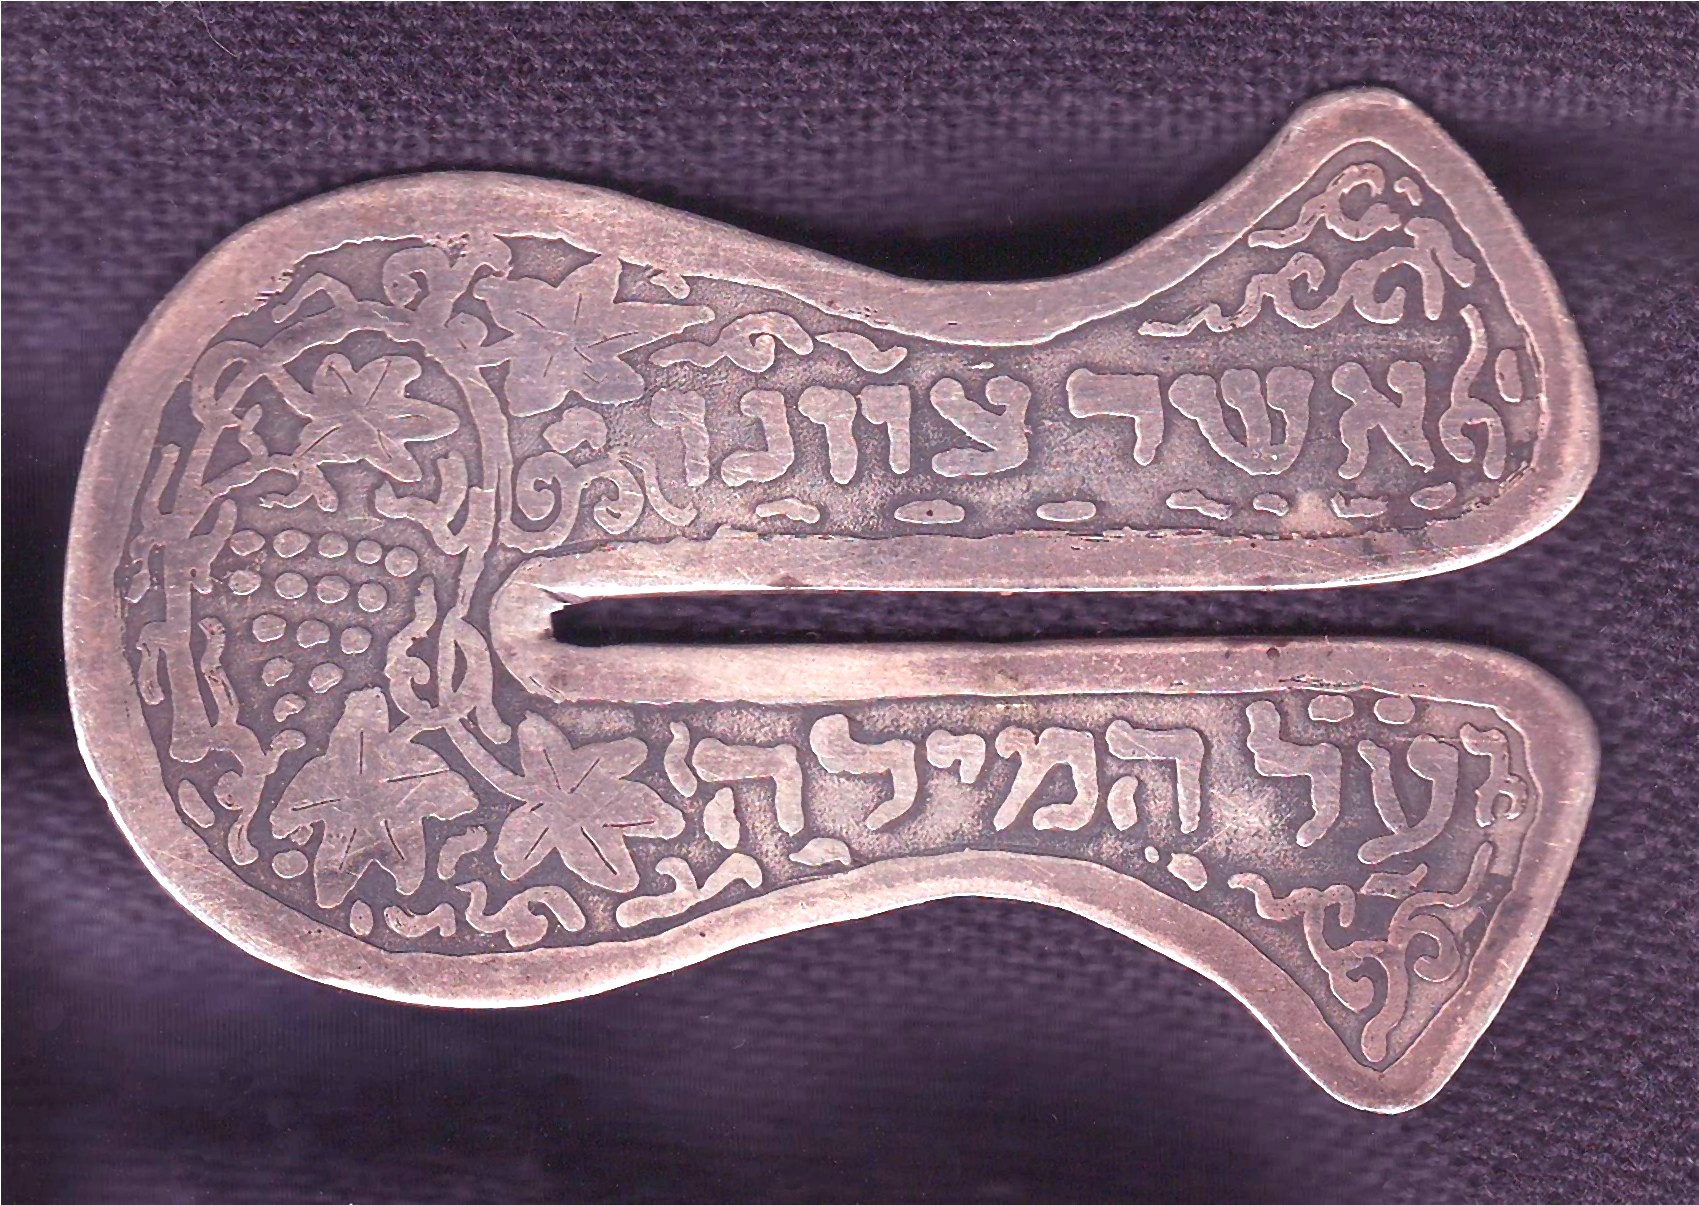 Bezalel circumcision shield